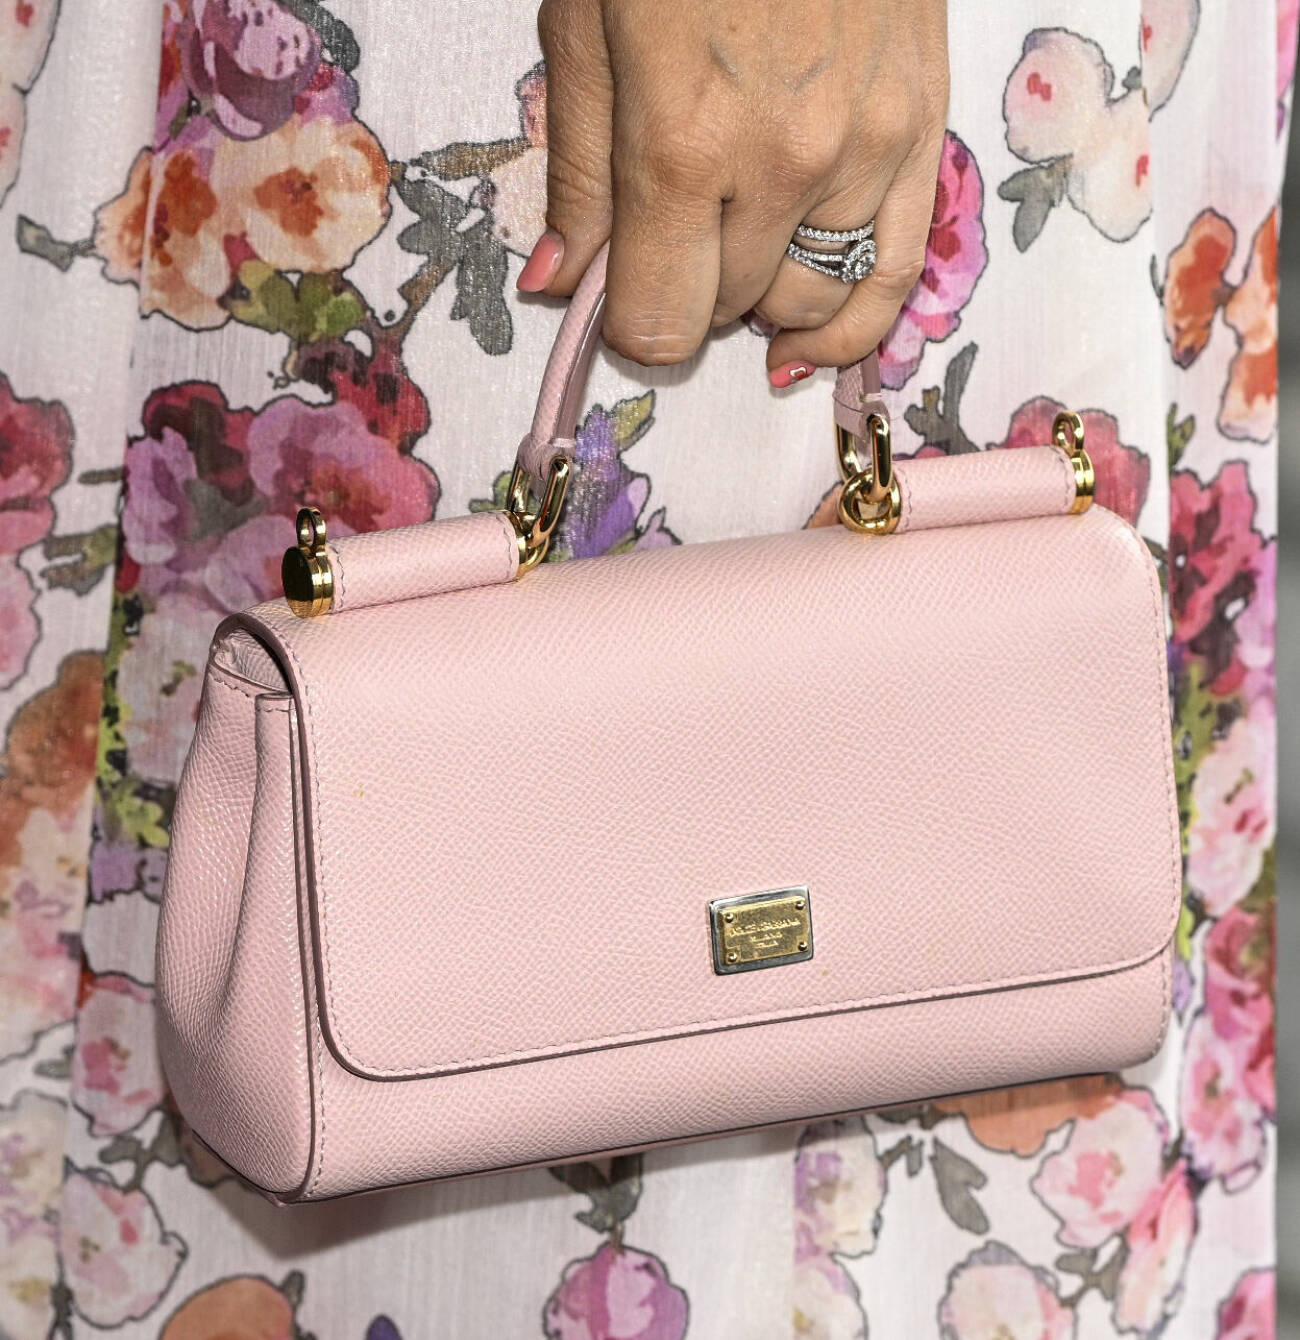 Prinsessan Sofia med sin rosa handväska från Dolce &amp; Gabbana.